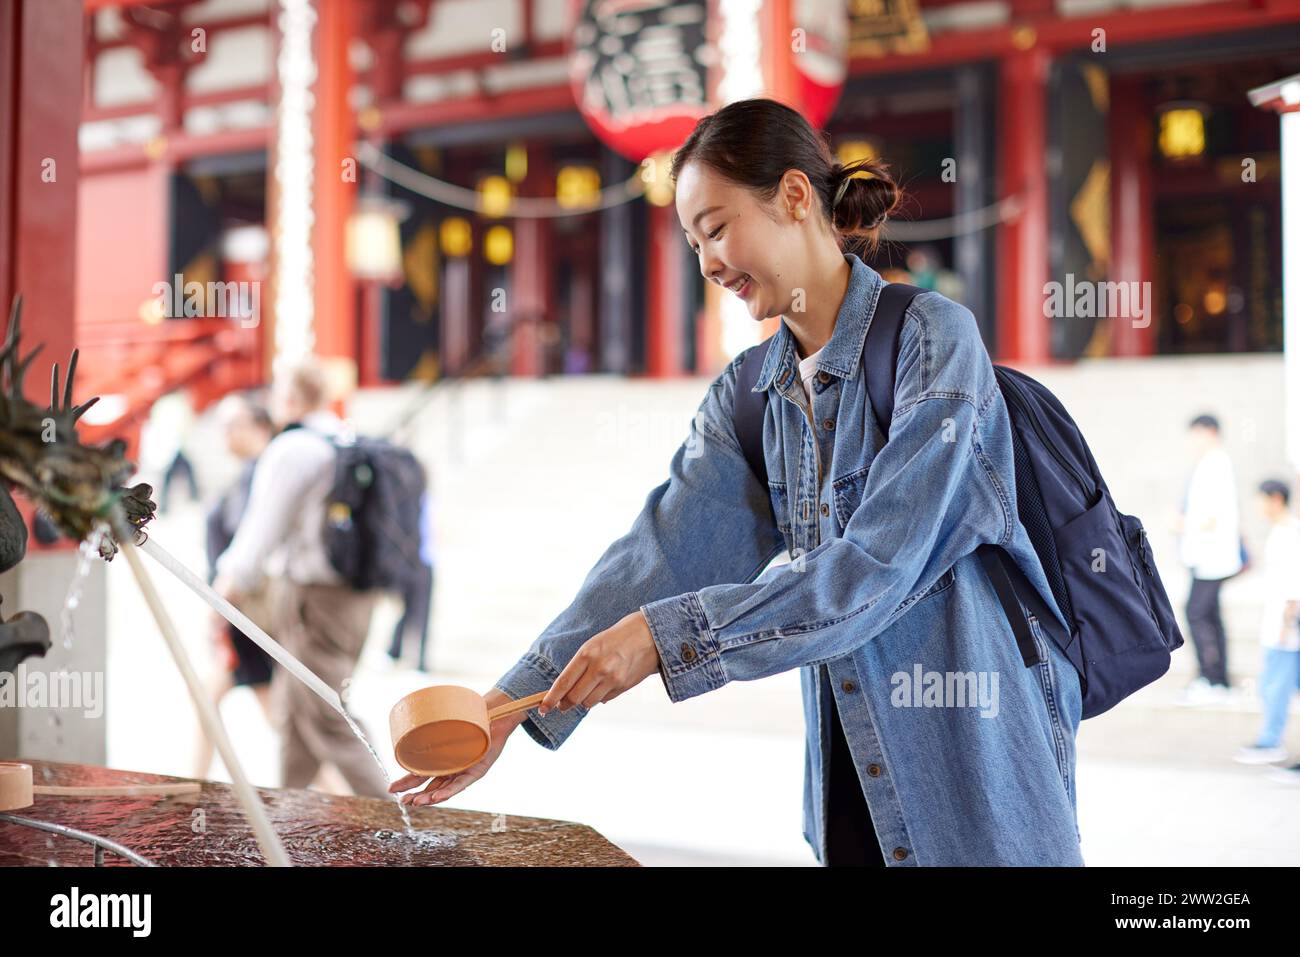 Asiatische Frau in einem Tempel Stockfoto